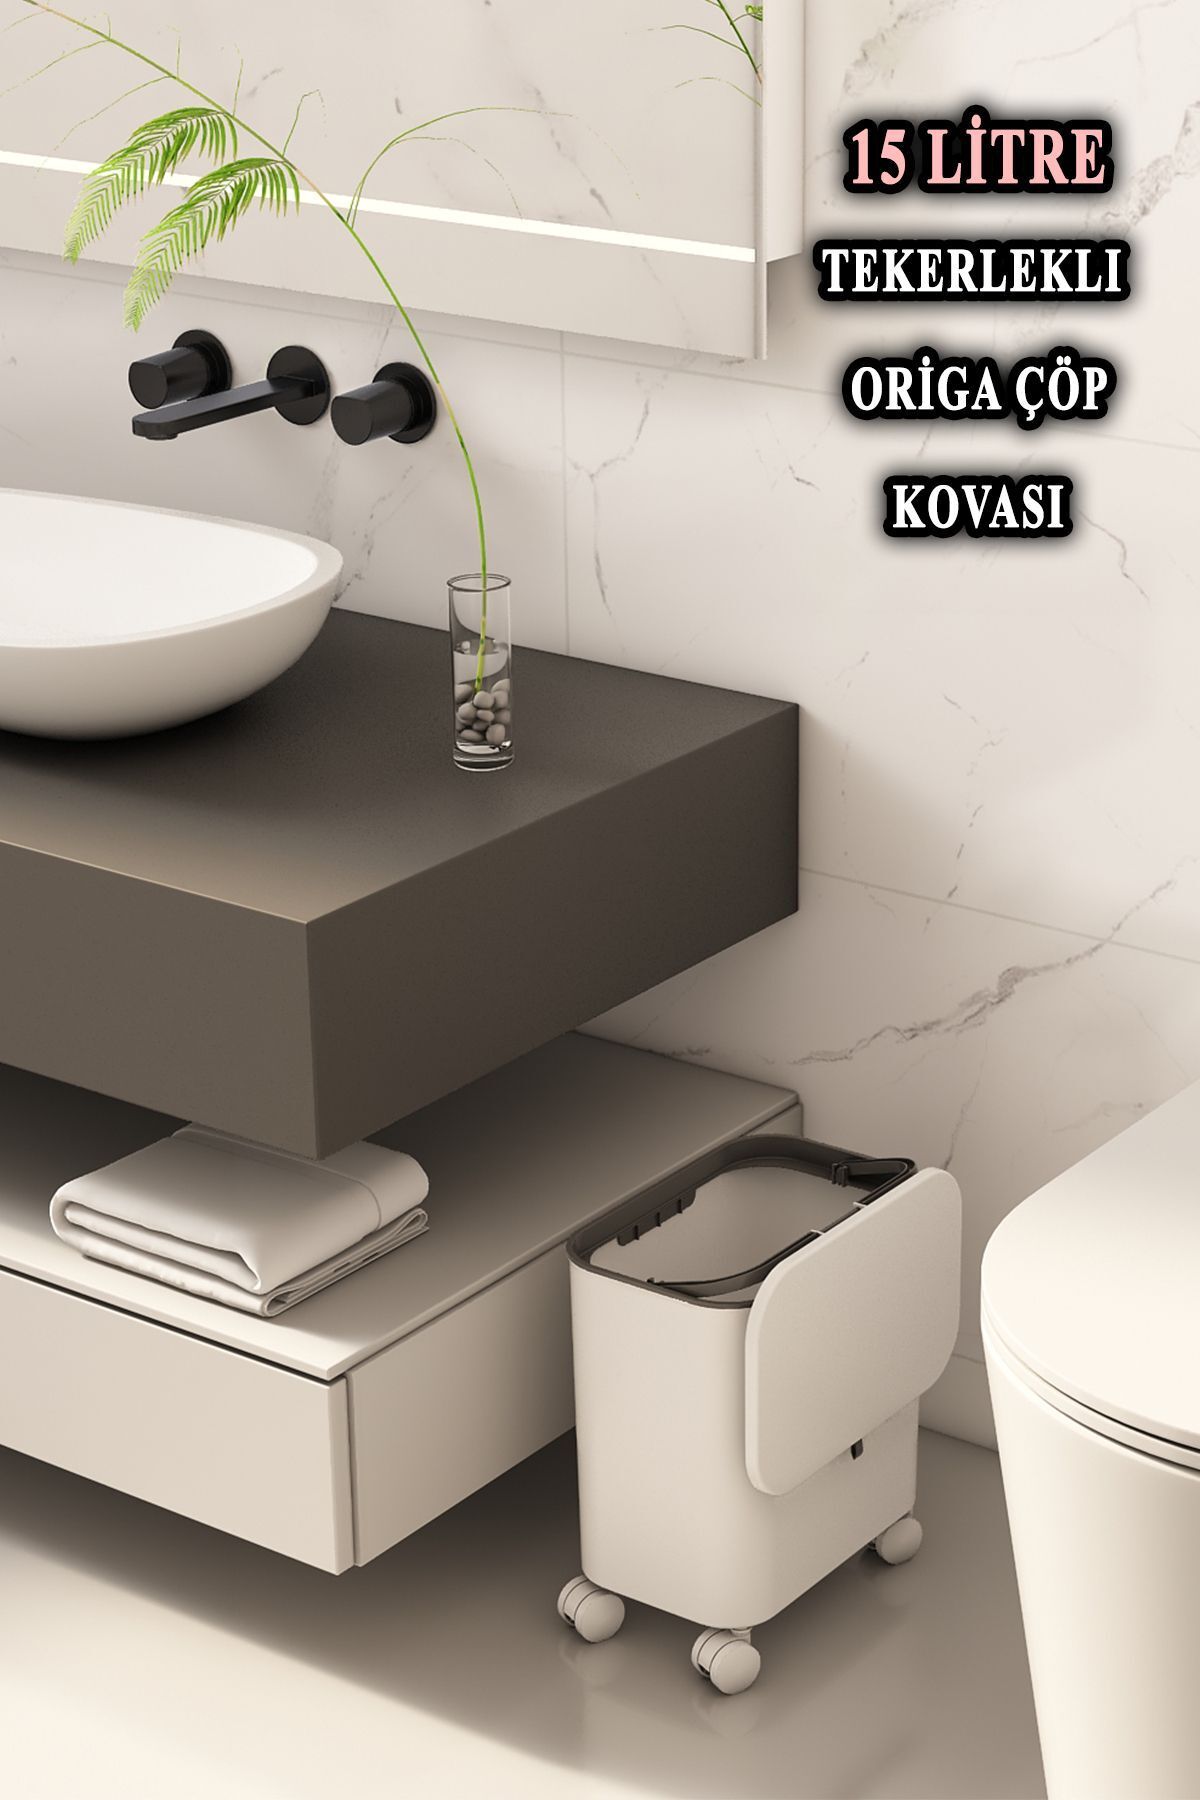 METROPOLAVM Origa Tekerlekli Fonksiyonel Kapaklı Banyo Ve Mutfak Çöp Kovası Beyaz